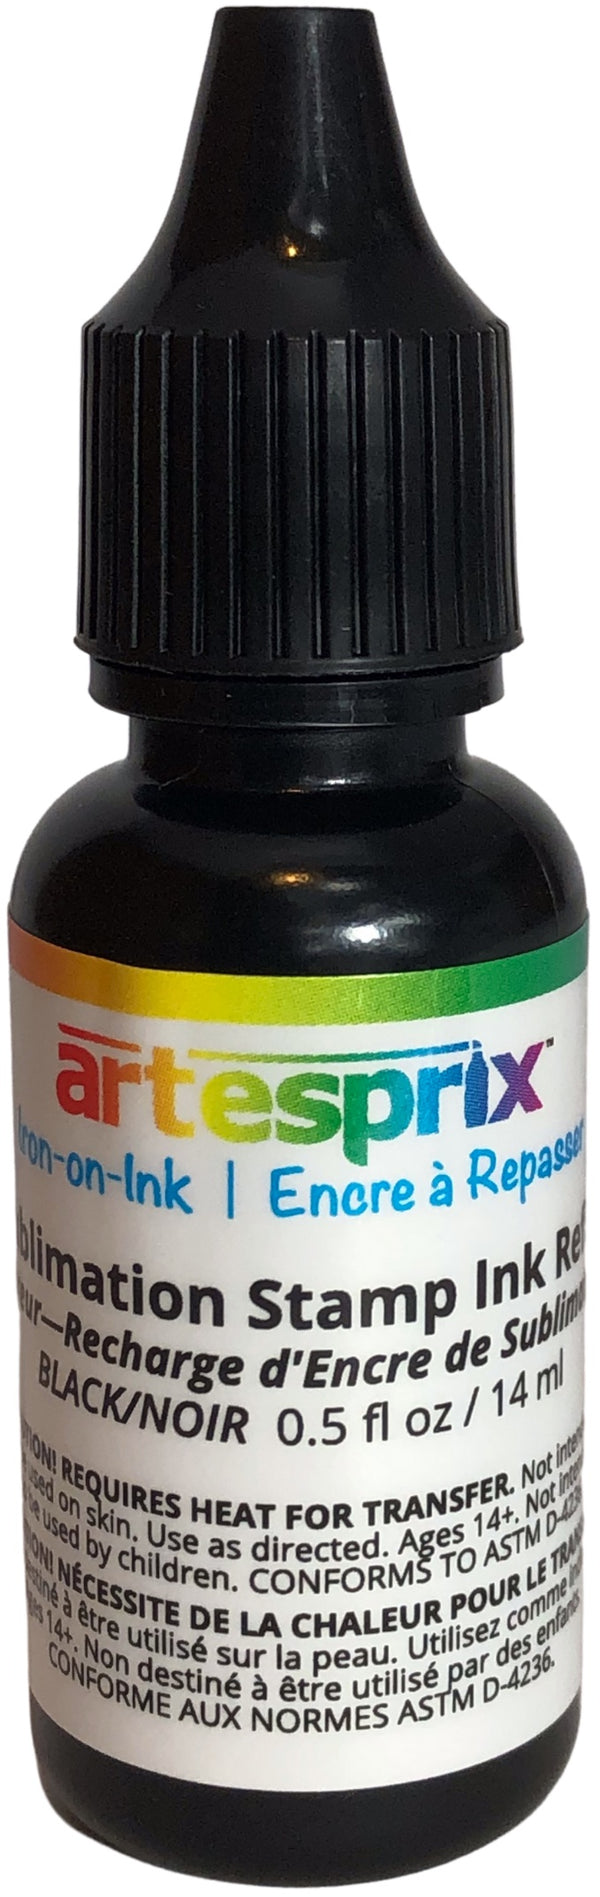 Artesprix Iron-On-Ink Sublimation Stamp Ink Refill - Black*